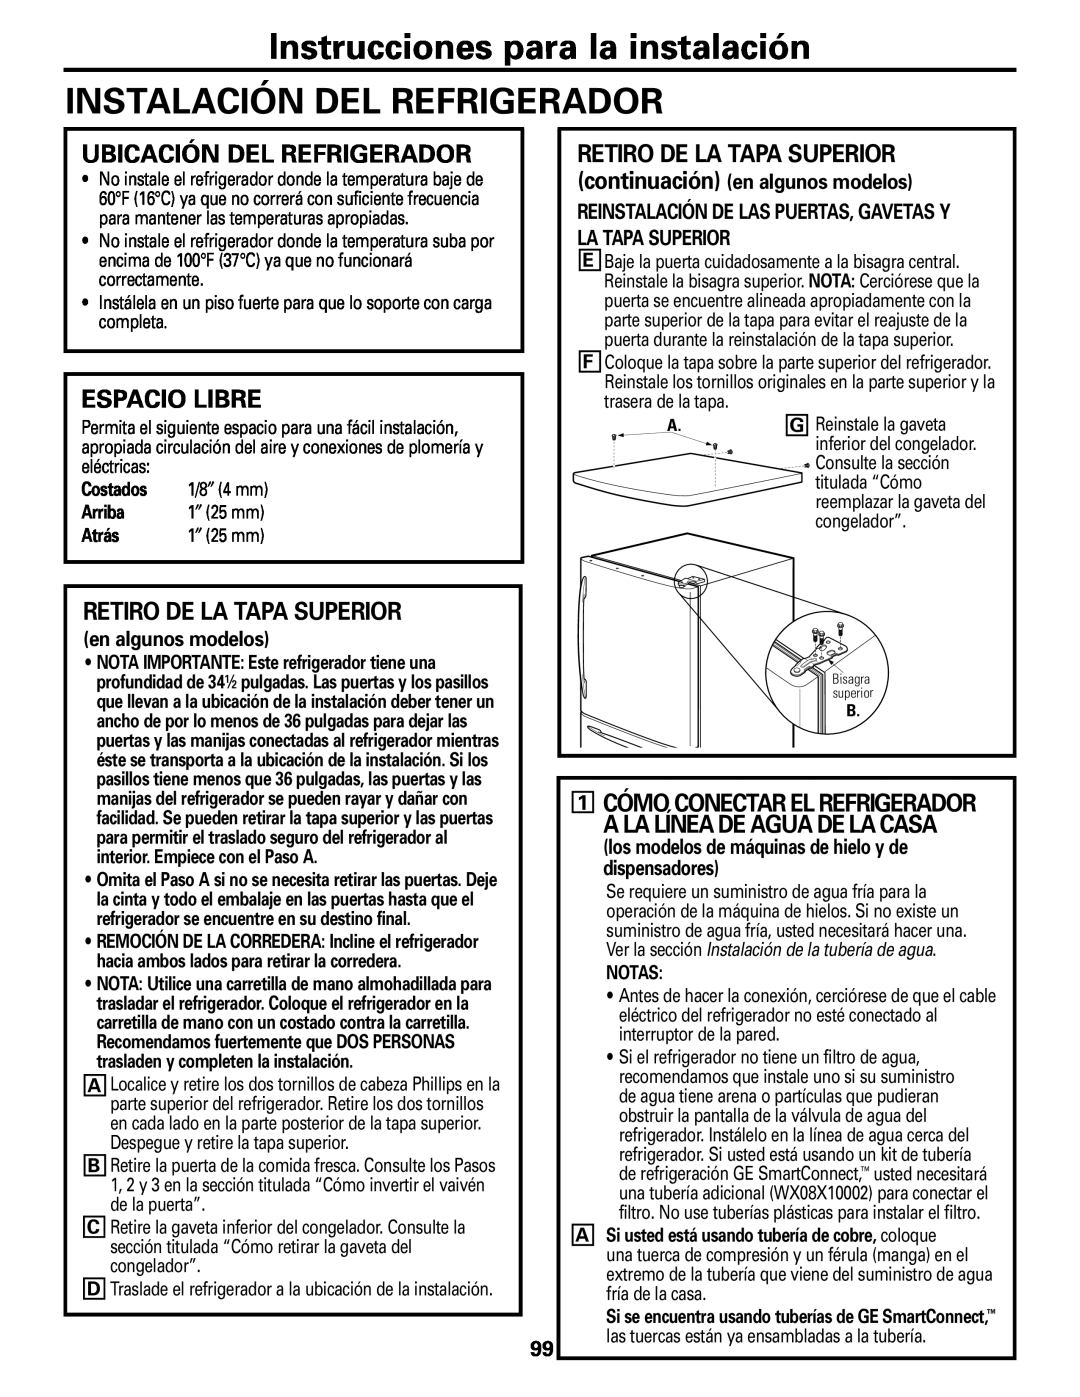 GE Monogram 20 Instrucciones para la instalación INSTALACIÓN DEL REFRIGERADOR, Ubicación Del Refrigerador, Espacio Libre 